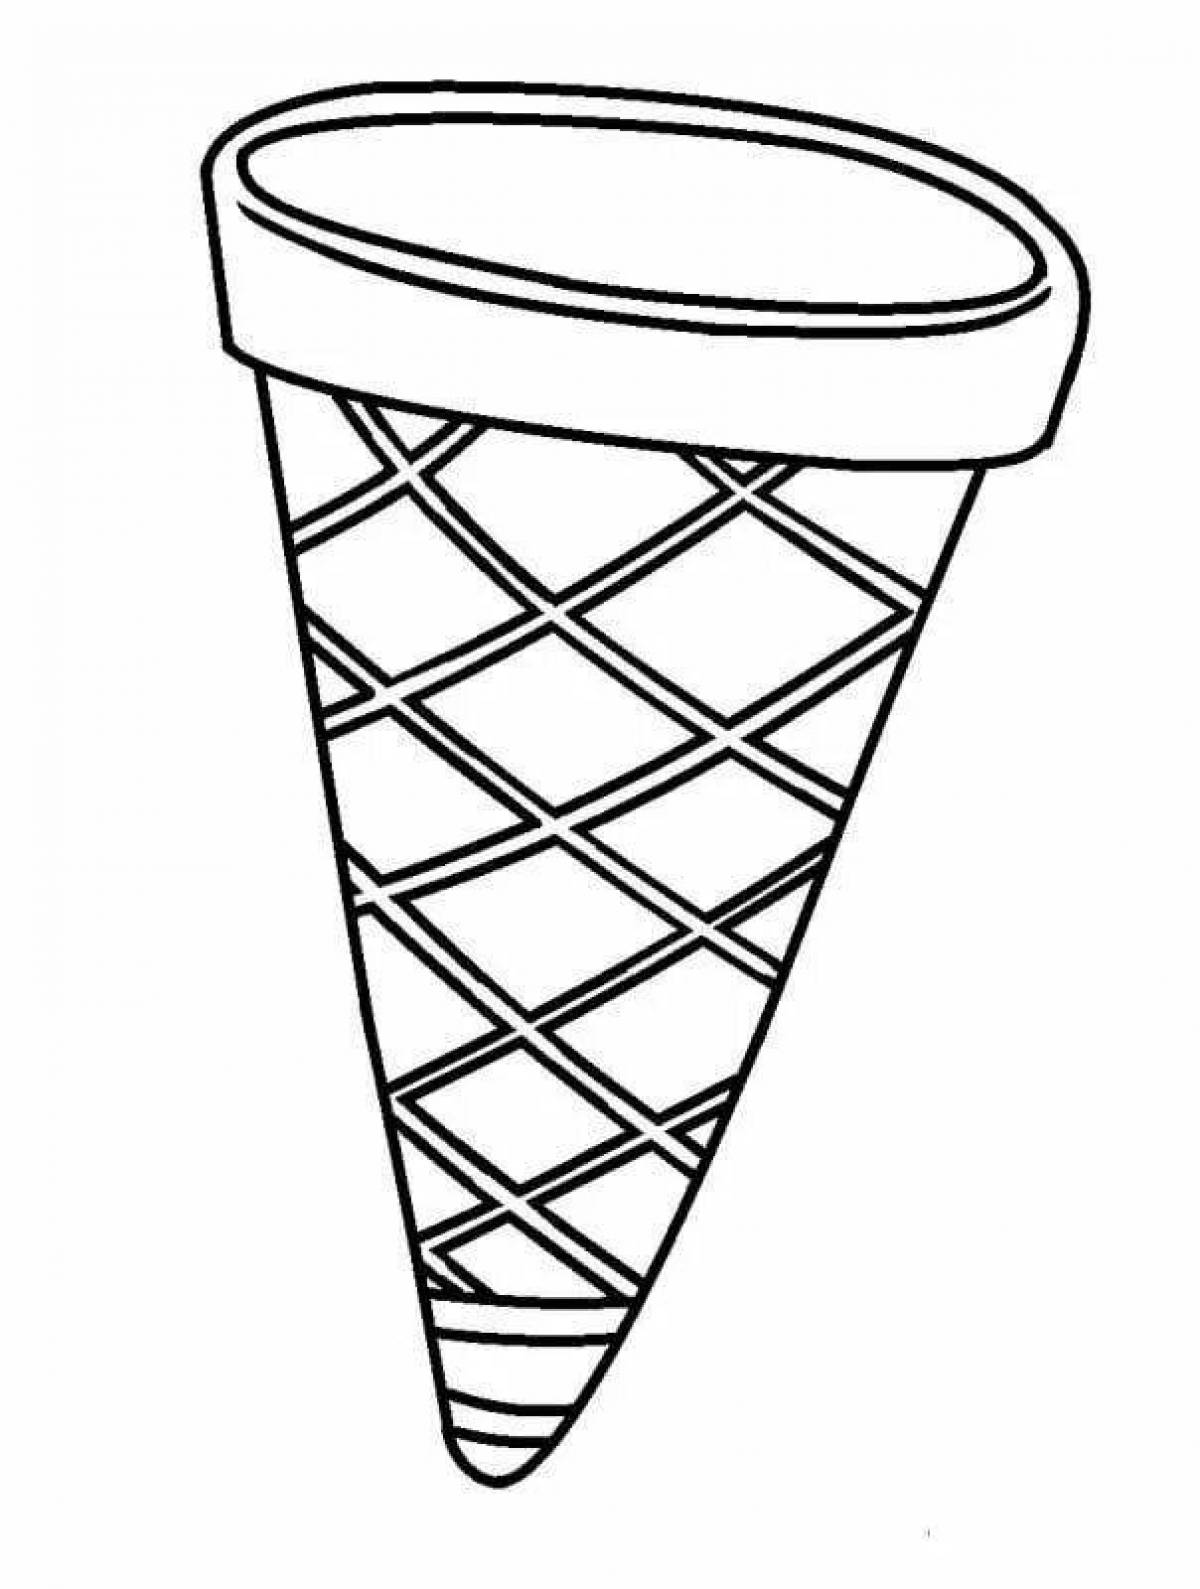 Ice cream cone #1